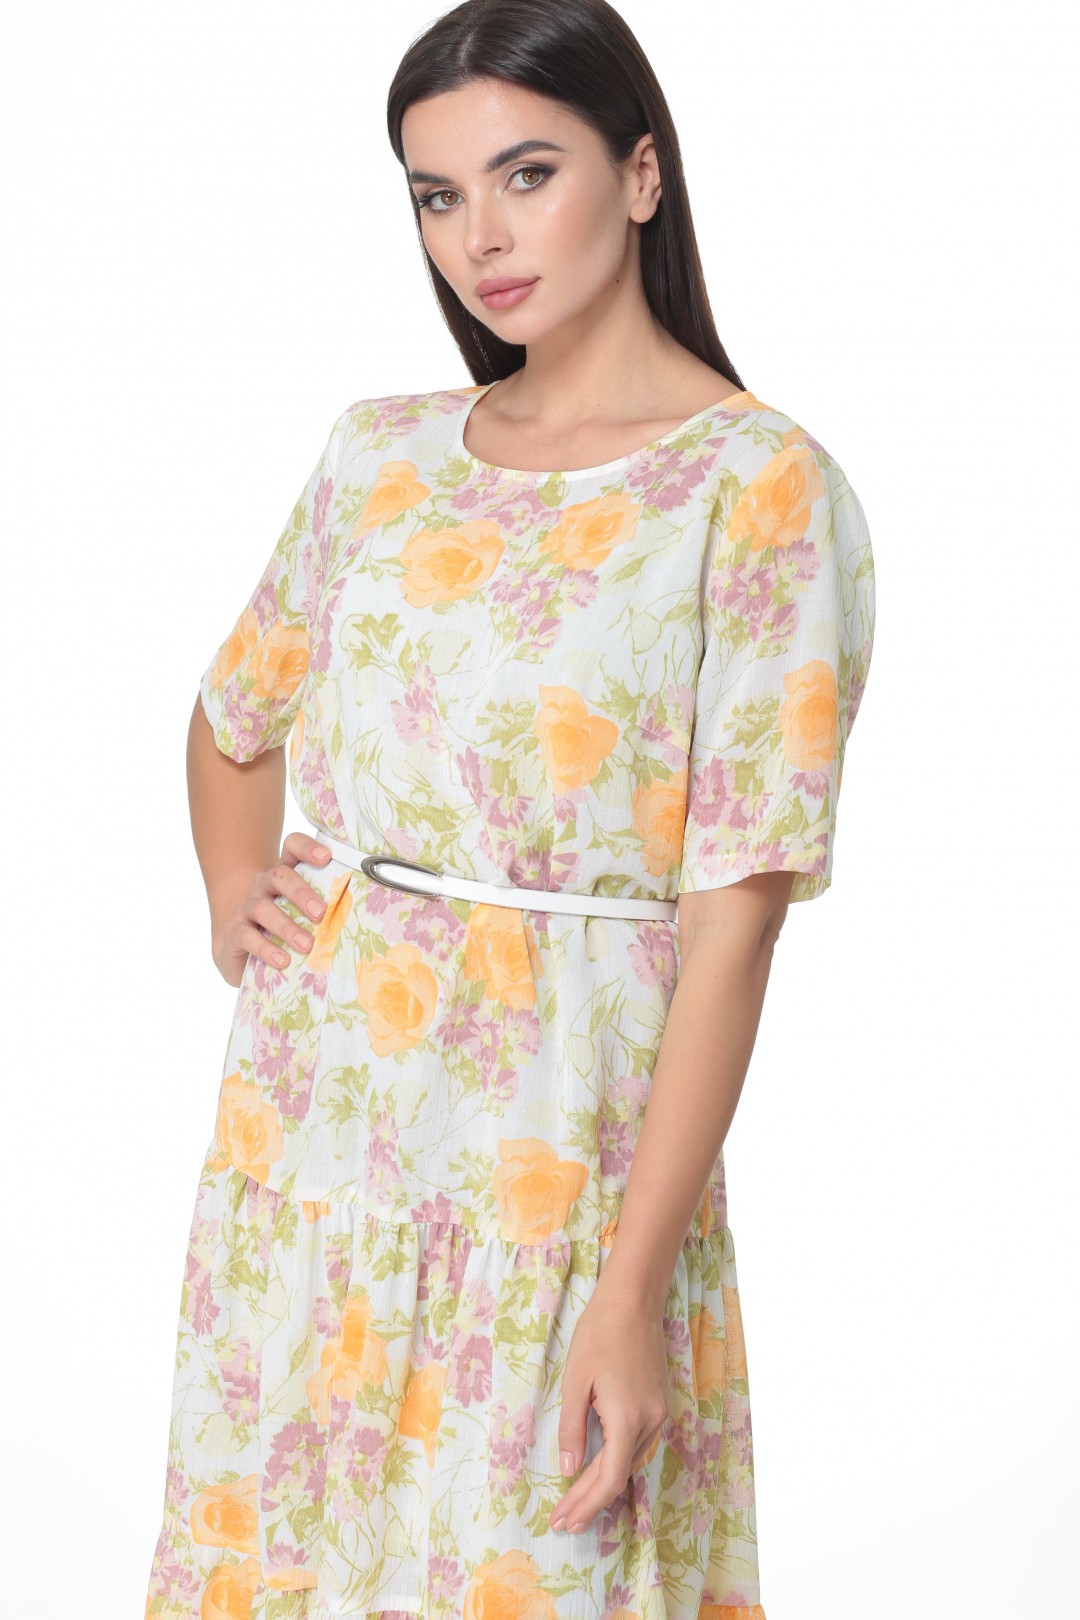 Платье Angelina & Company 514ж желтые цветы